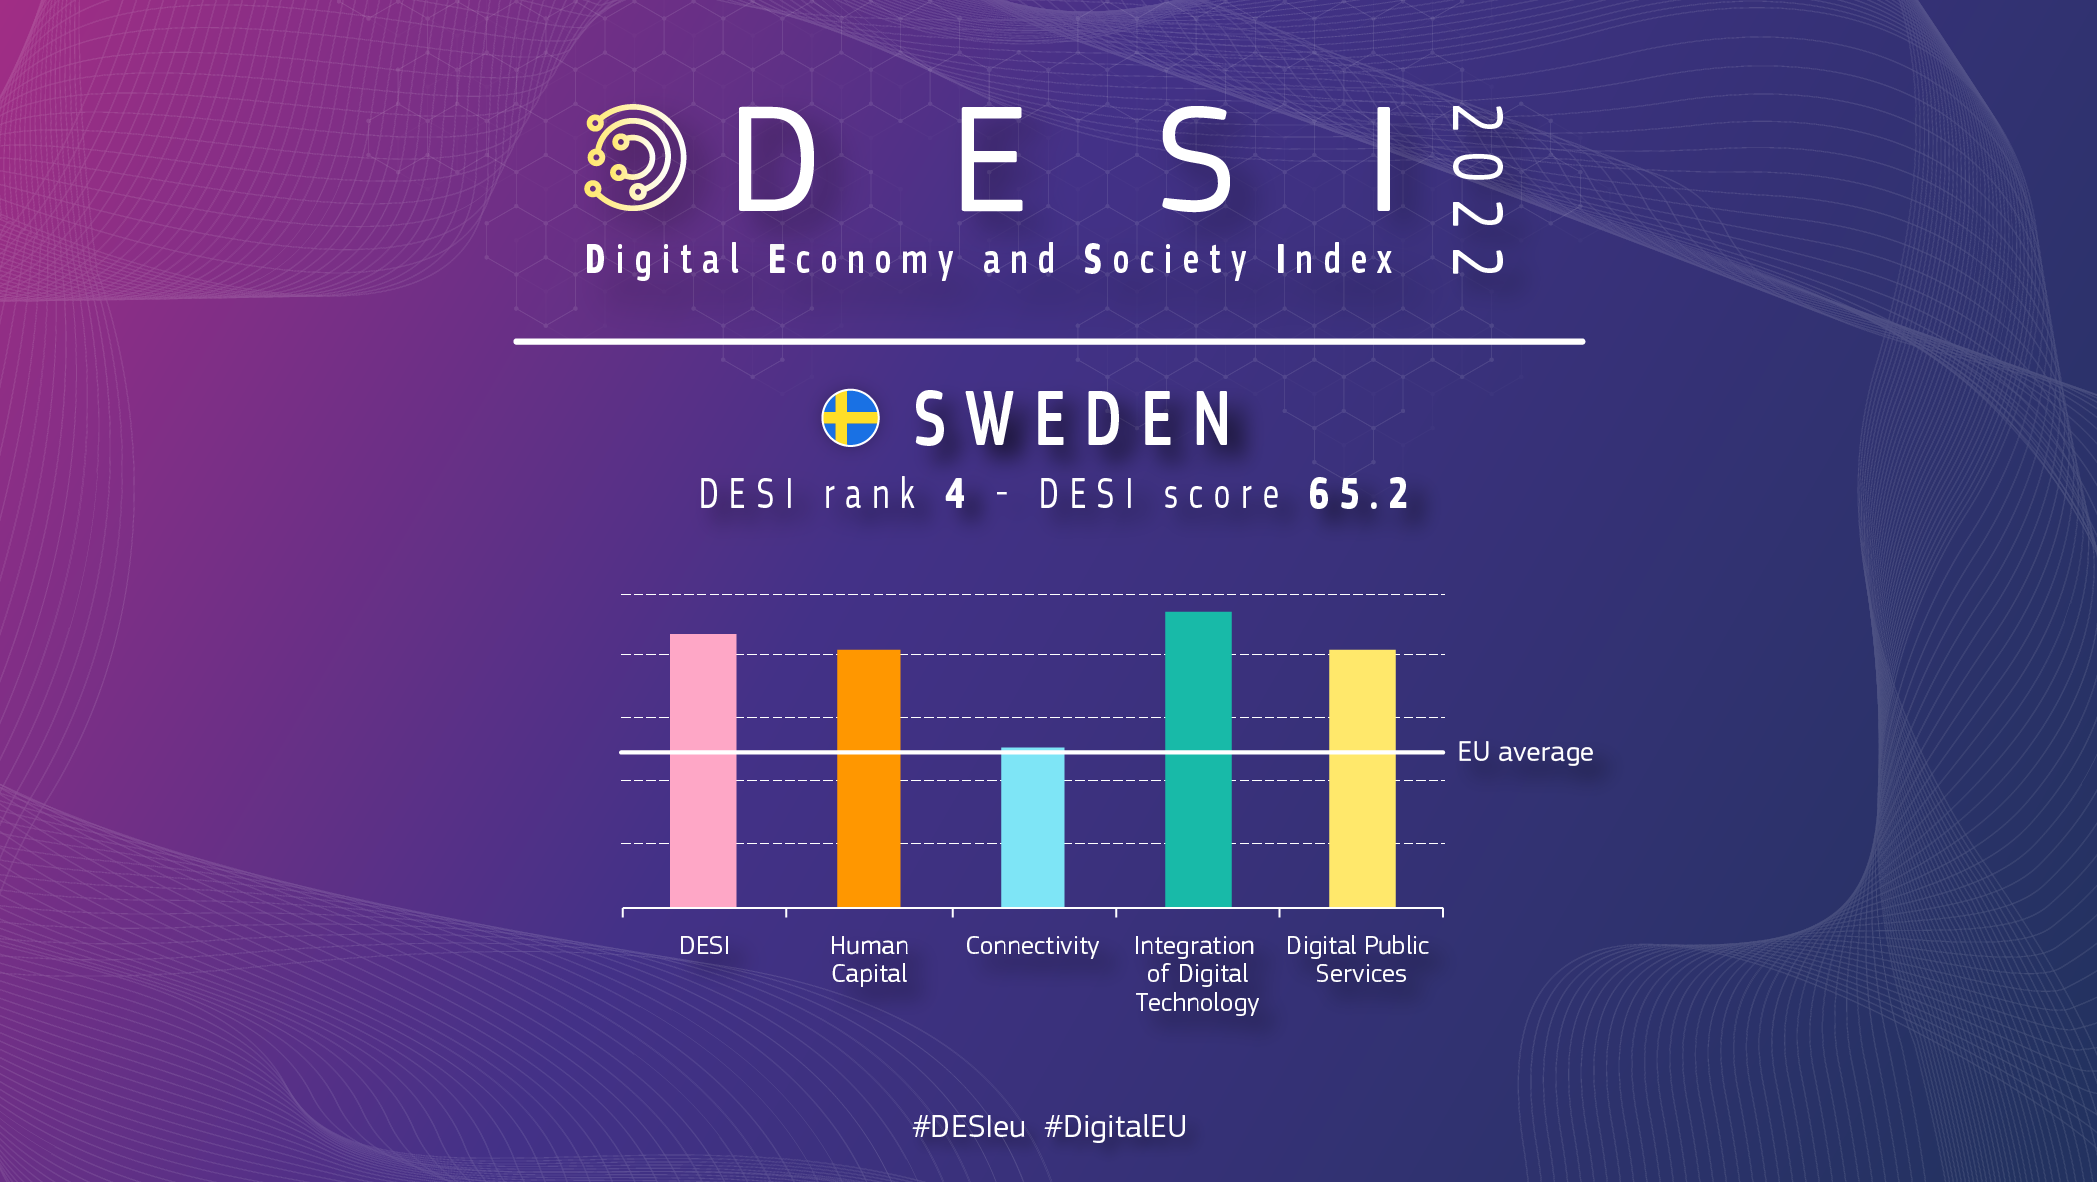 Grafisks pārskats par Zviedriju DESI, kurā vērtējums ir 4 ar vērtējumu 65,2